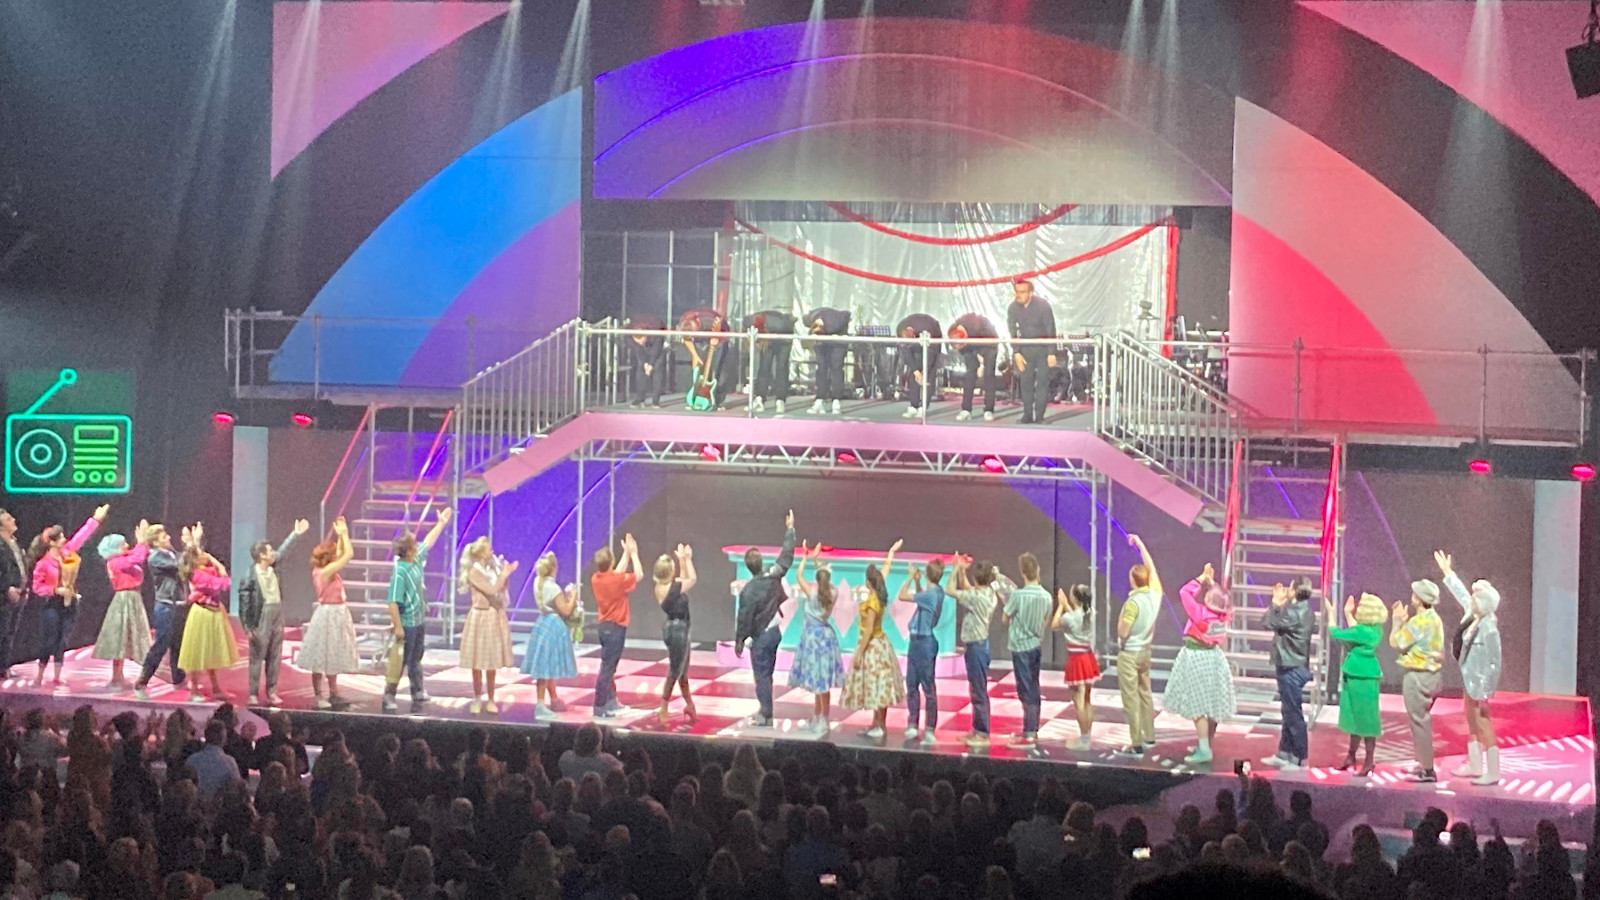 Kuvassa ovat lavalla kaikki esiintyjät nauhana lavalla. Taustalla näkyy lavasteet, joissa on neliömäisessä taulussa sinisiä, punaisia ja mustia paksuja kaaria.